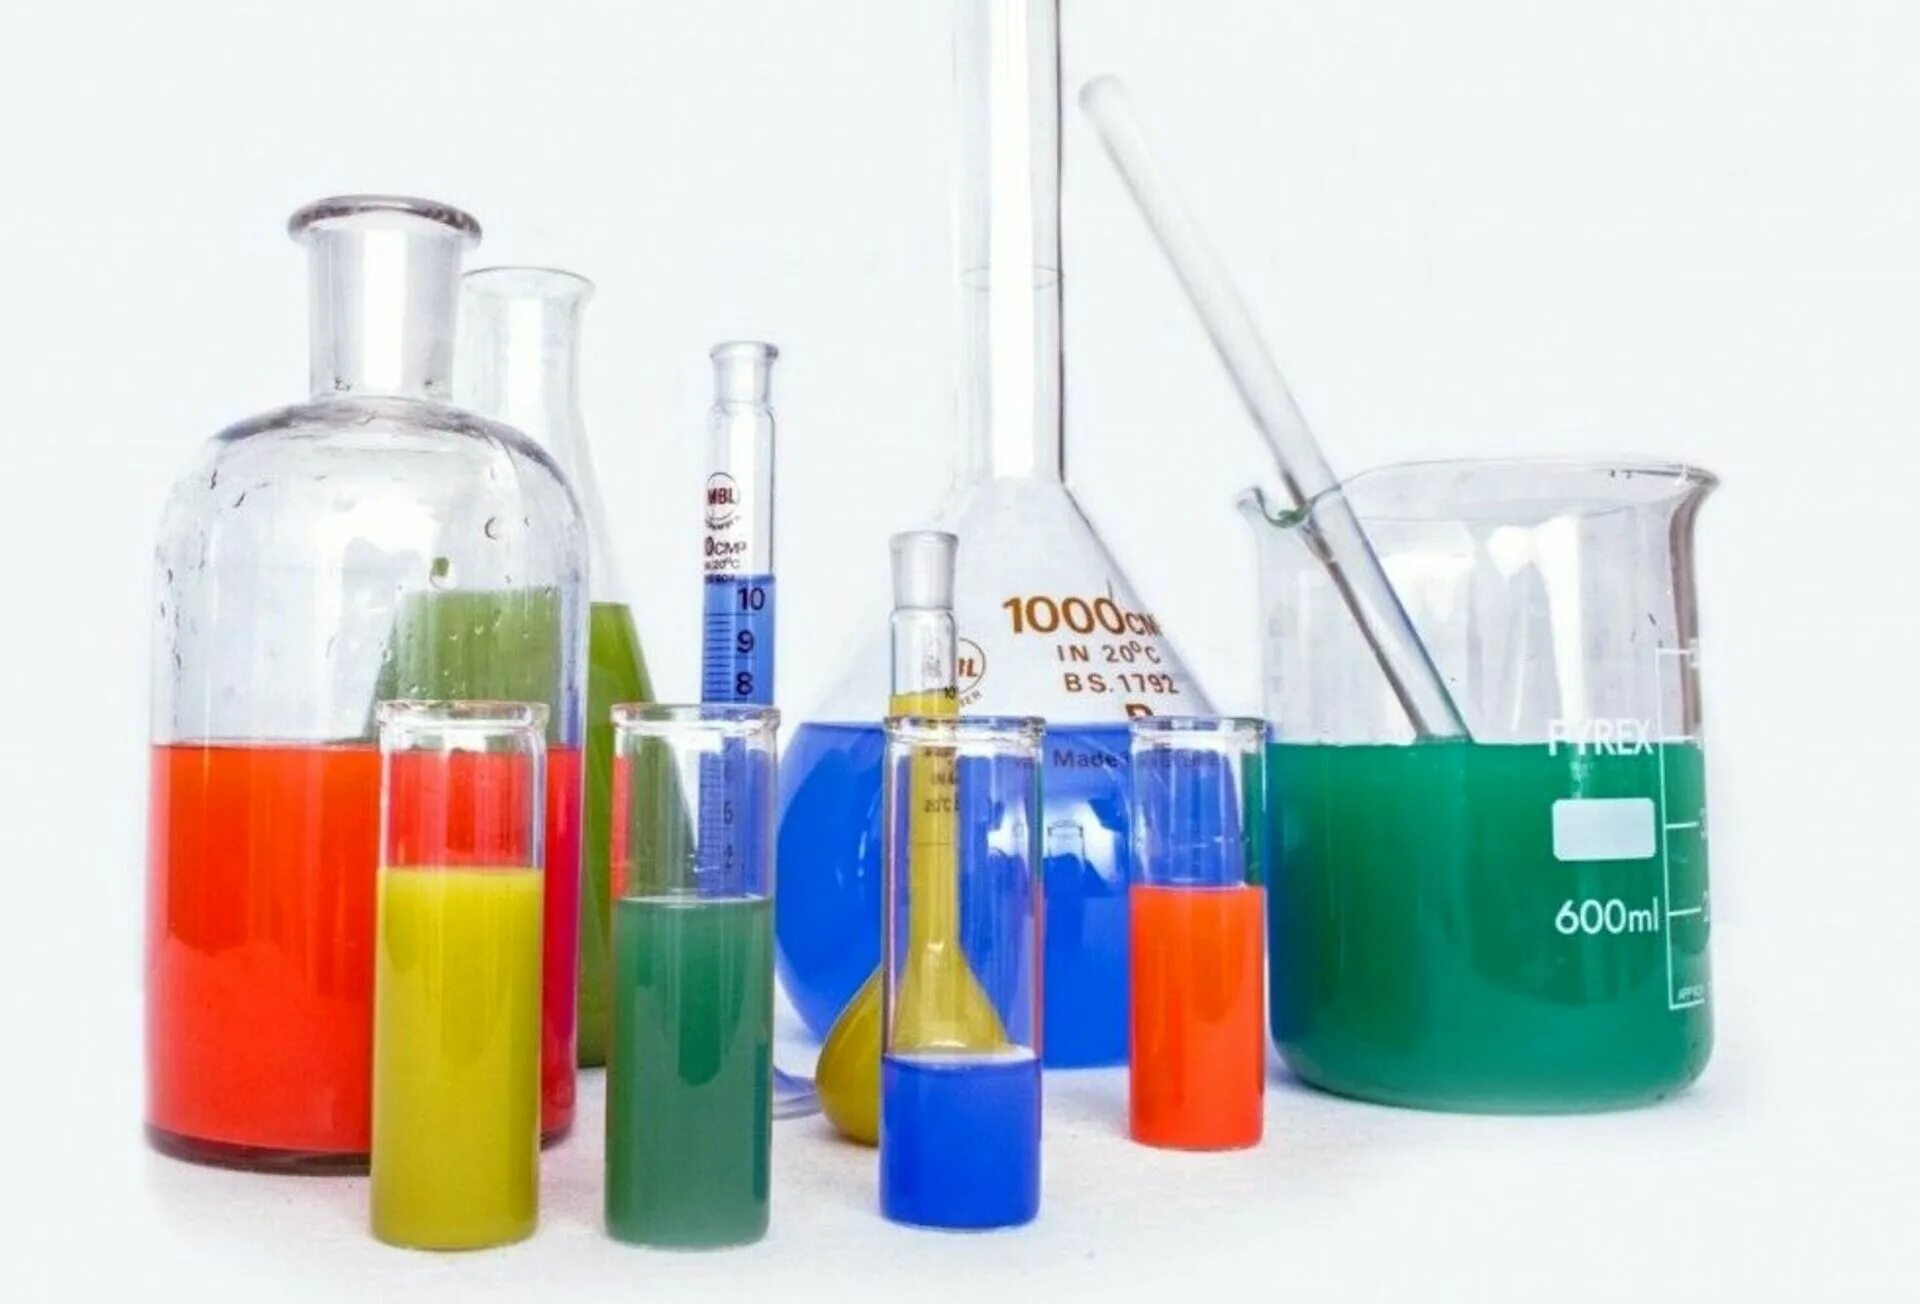 Новые химические соединения. Химические реактивы. Реактивы для лаборатории. Лабораторная посуда и реактивы. Химические реактивы для лаборатории.